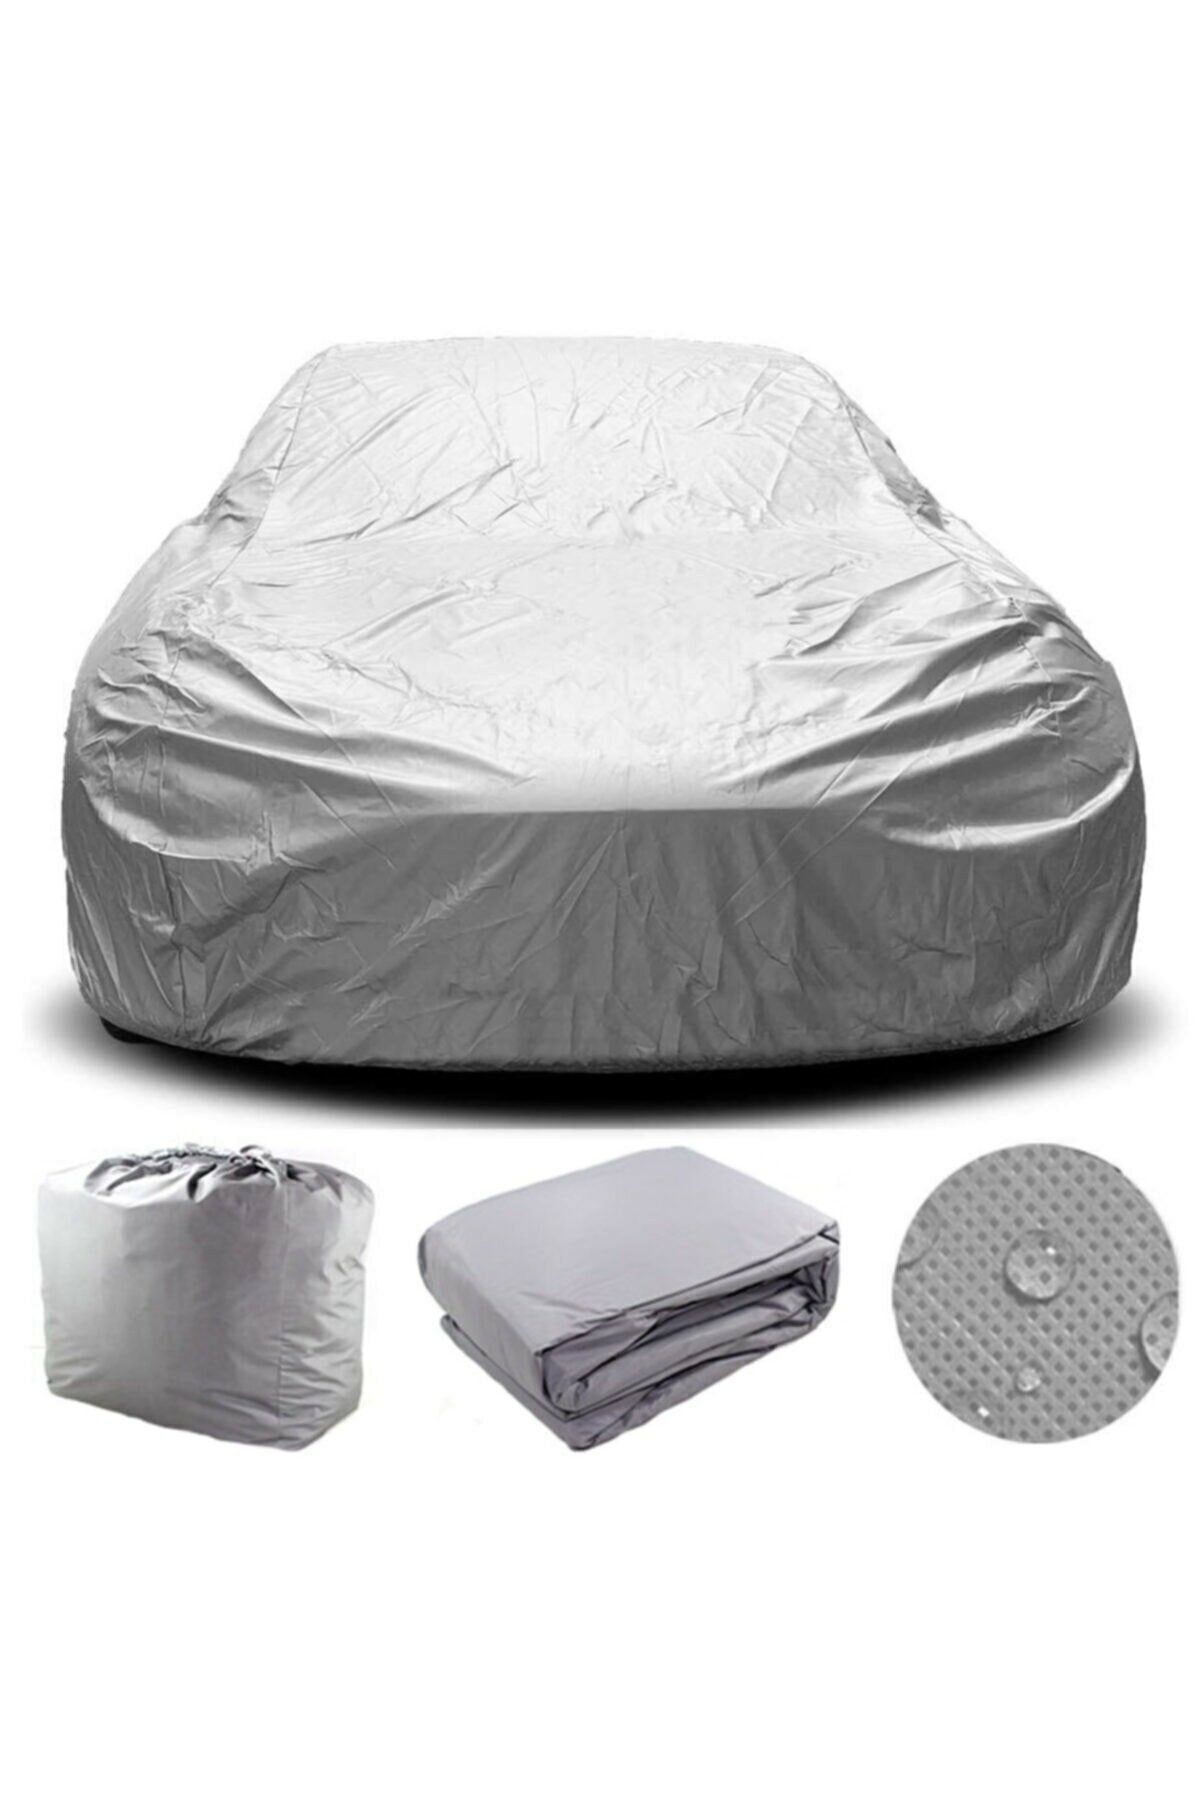 Paspas Merkezi Kia Venga Car Tarpaulin Cover Tent - Trendyol